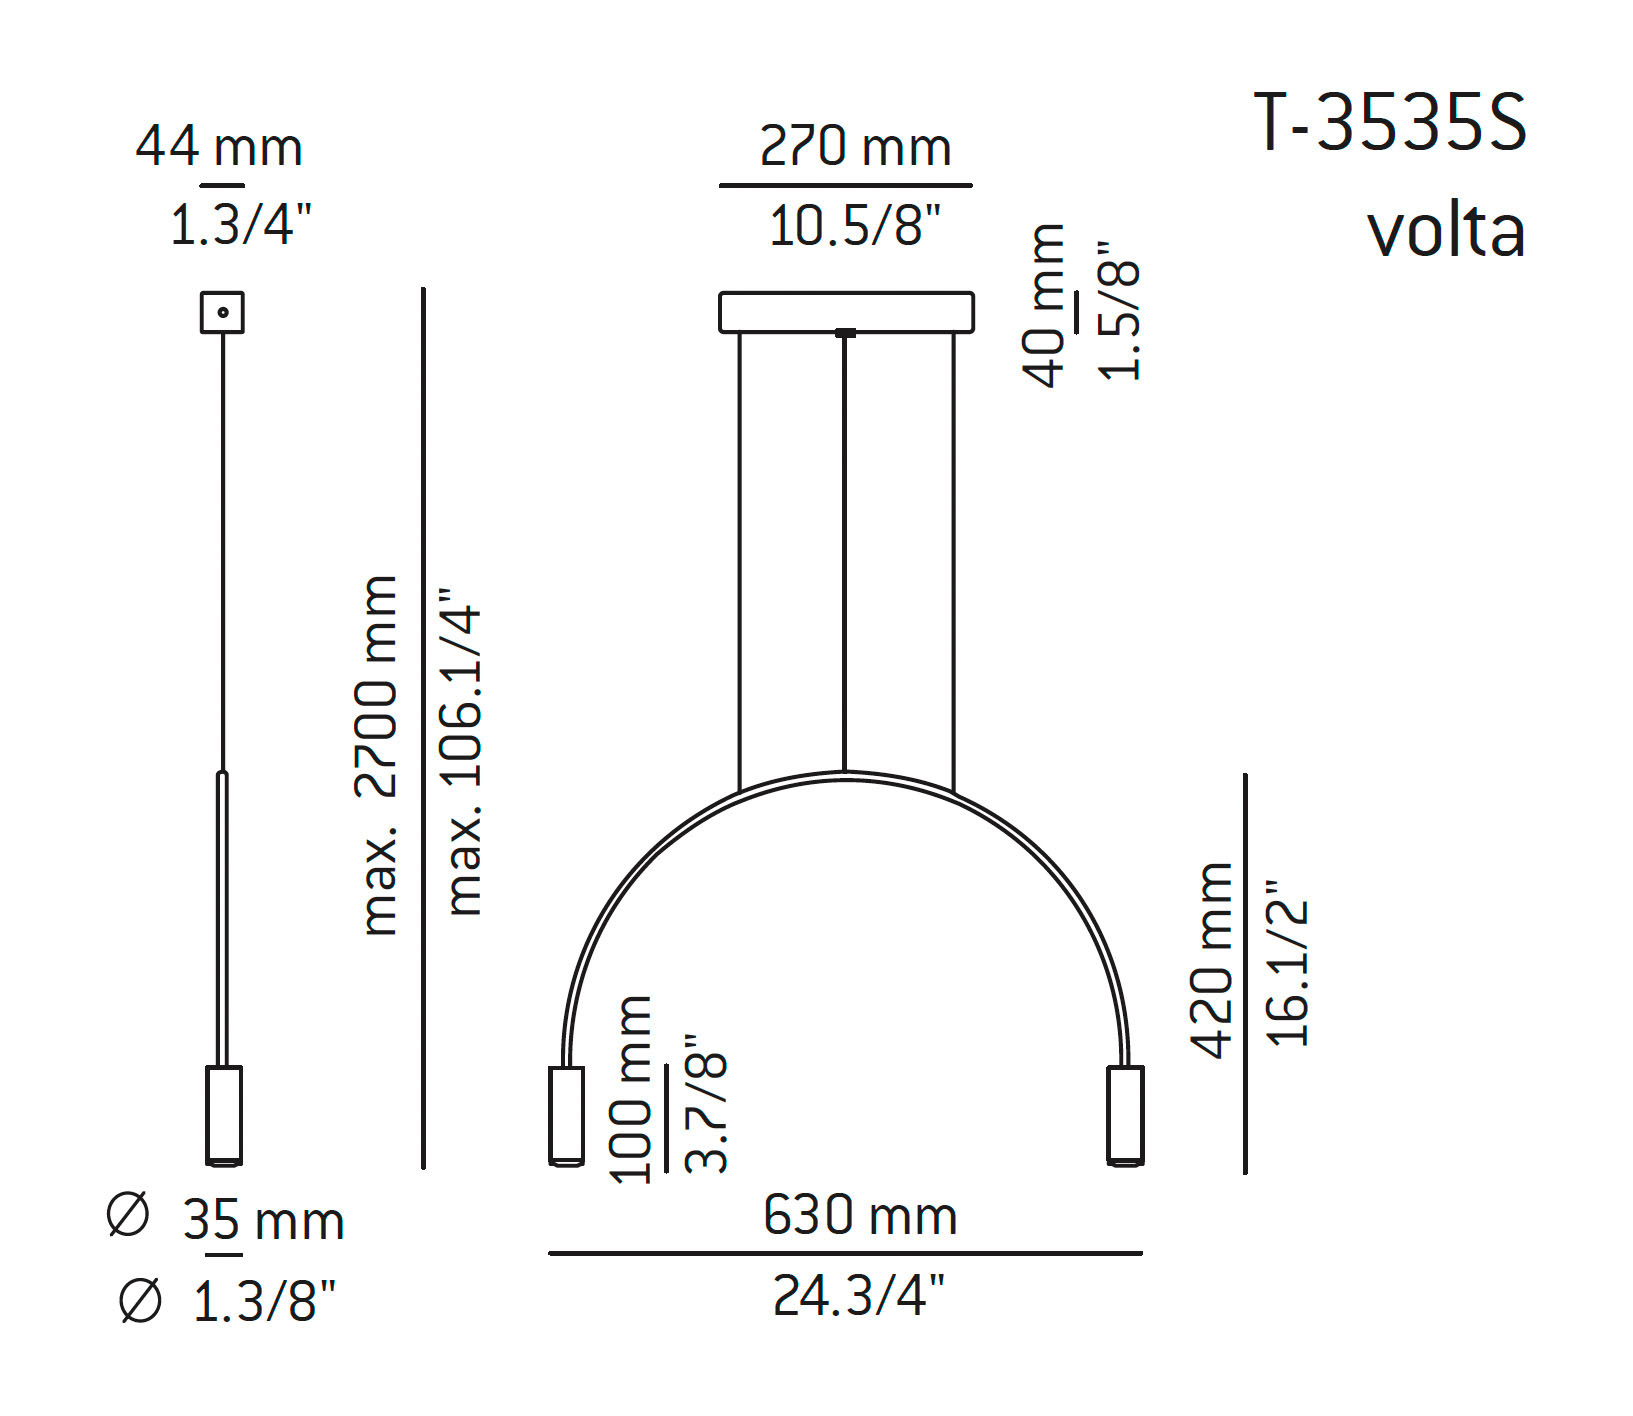 Medidas Volta modelo T-3535S de suspensión de Estiluz